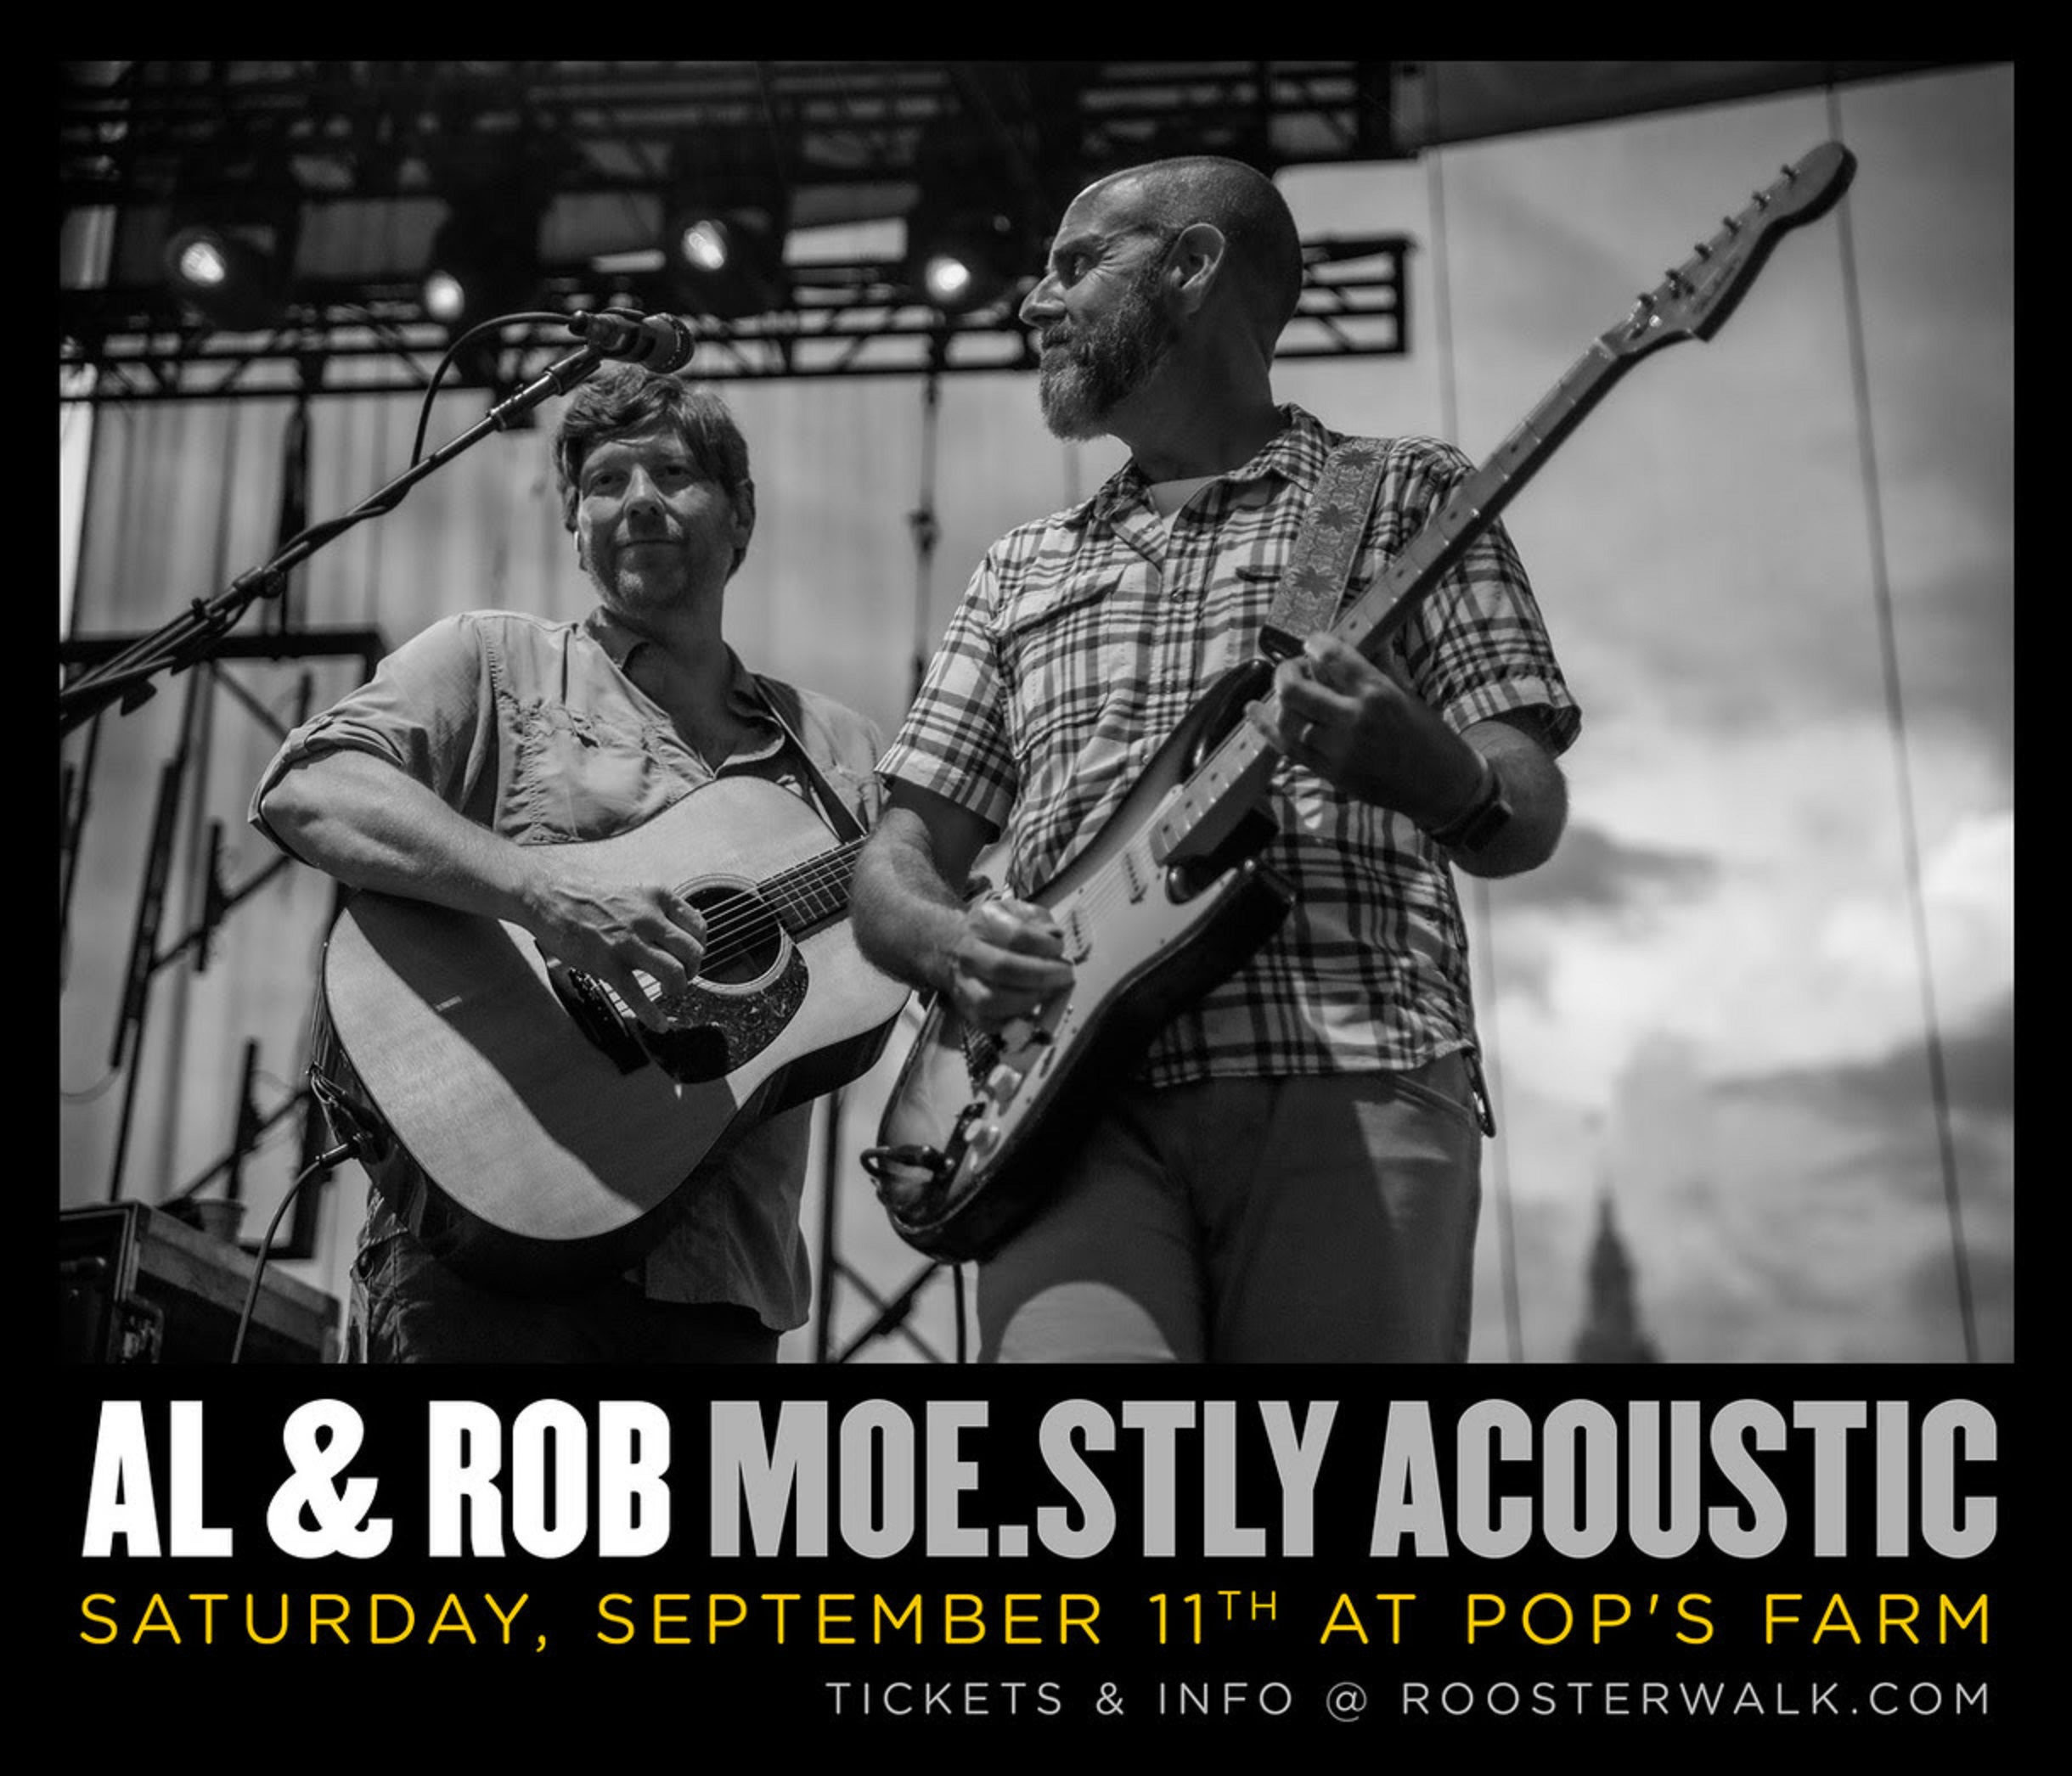 Al & Rob of moe. this Saturday at Pop's Farm!